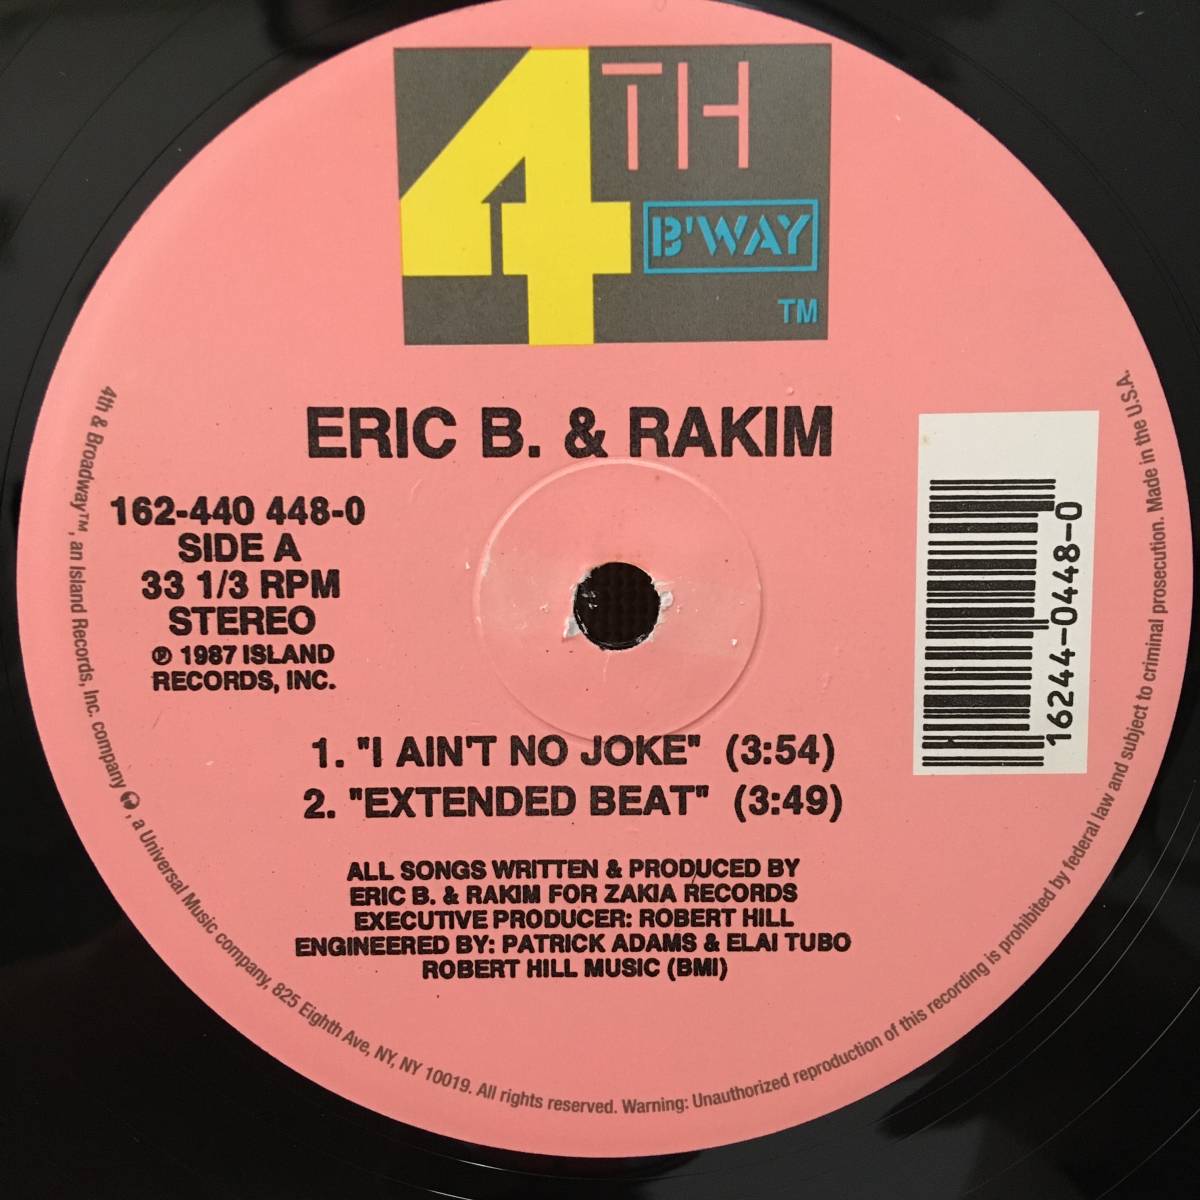 Eric B. & Rakim / I Ain't No Joke　[4th & Broadway - 162-440 448-0]_画像1